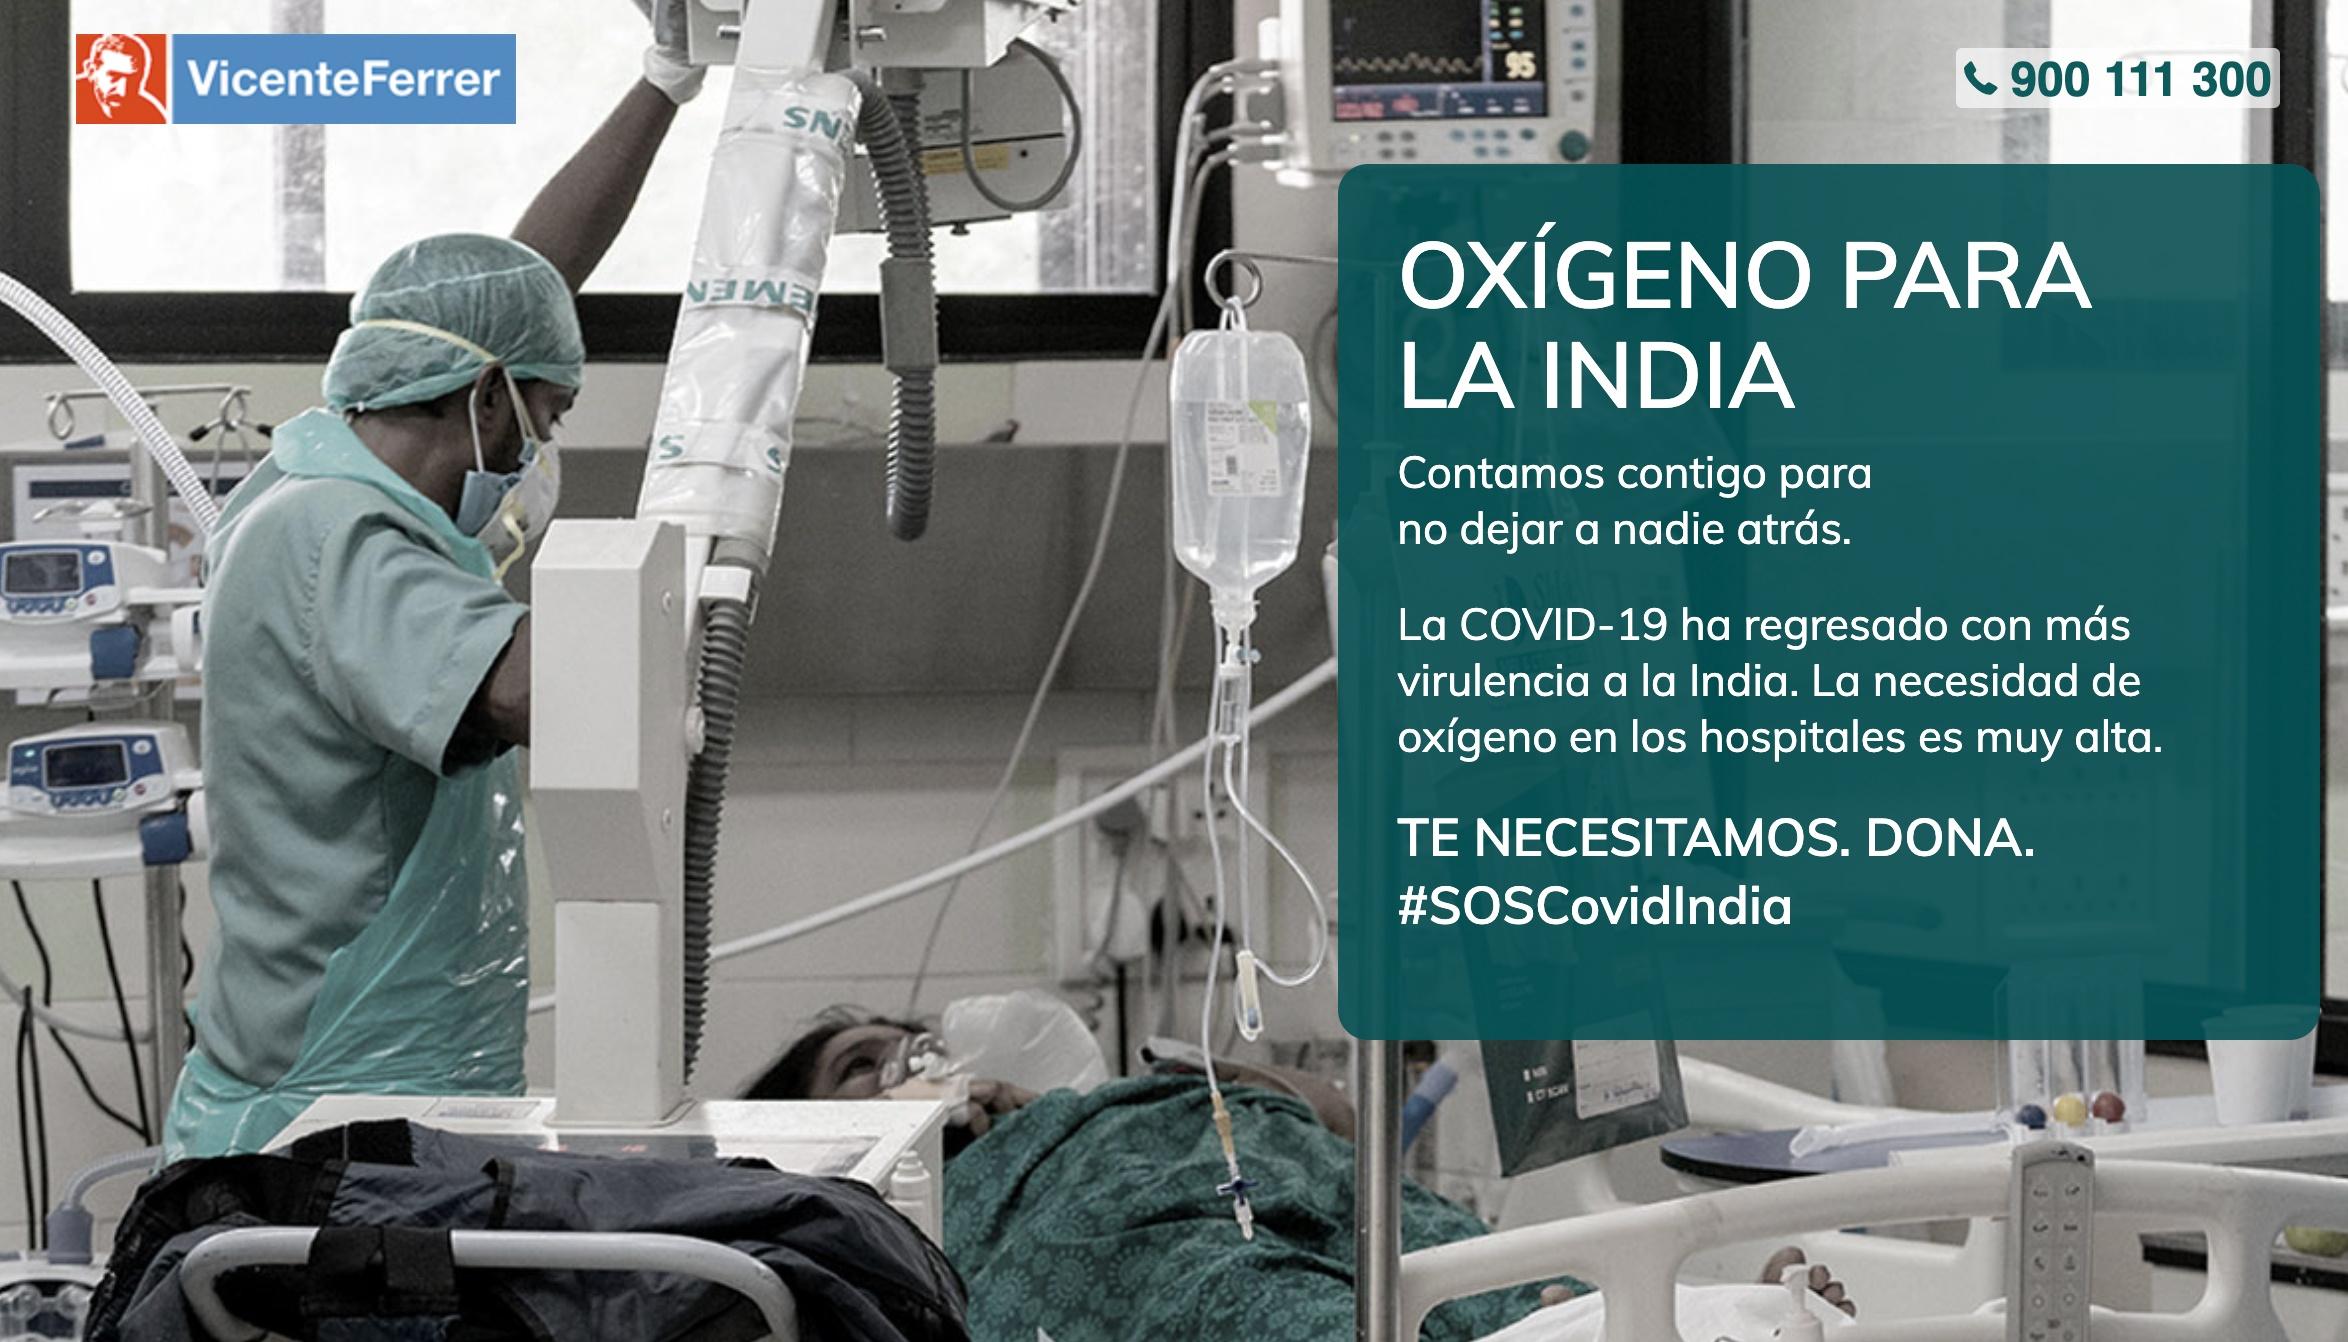 SIAM colabora con la Asociación Vicente Ferrer en su campaña "Oxígeno para la India" 